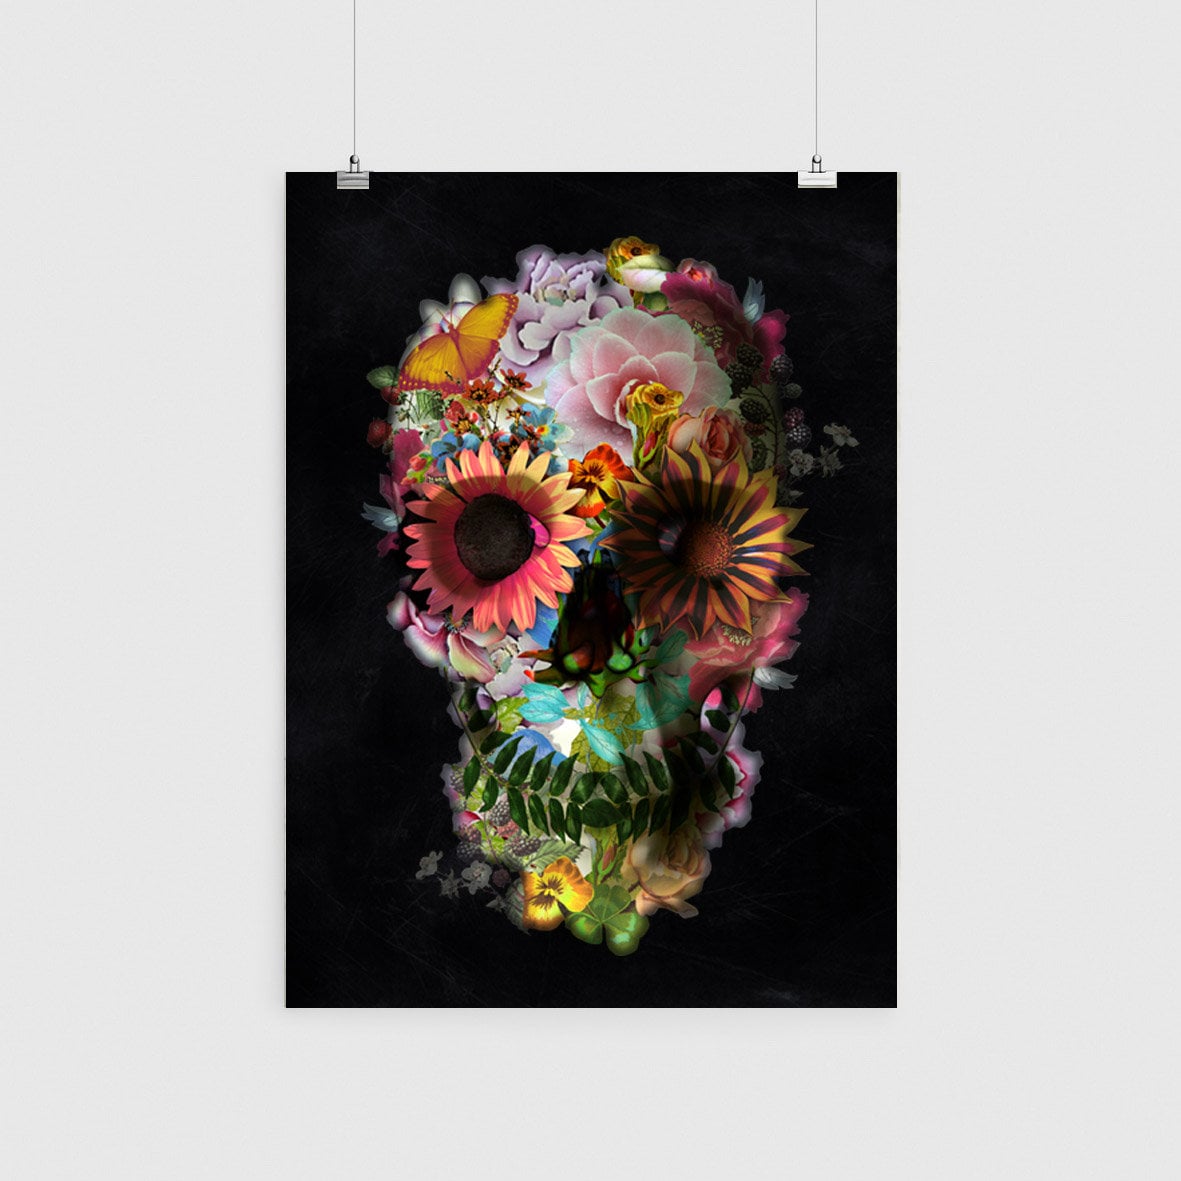 Flower Skull Poster, Floral Skull Wall Art, Sugar Skull Art Print Gift, Skull Print Wall Decor, Gothic Skull Art Home Decor,Art By Ali Gulec